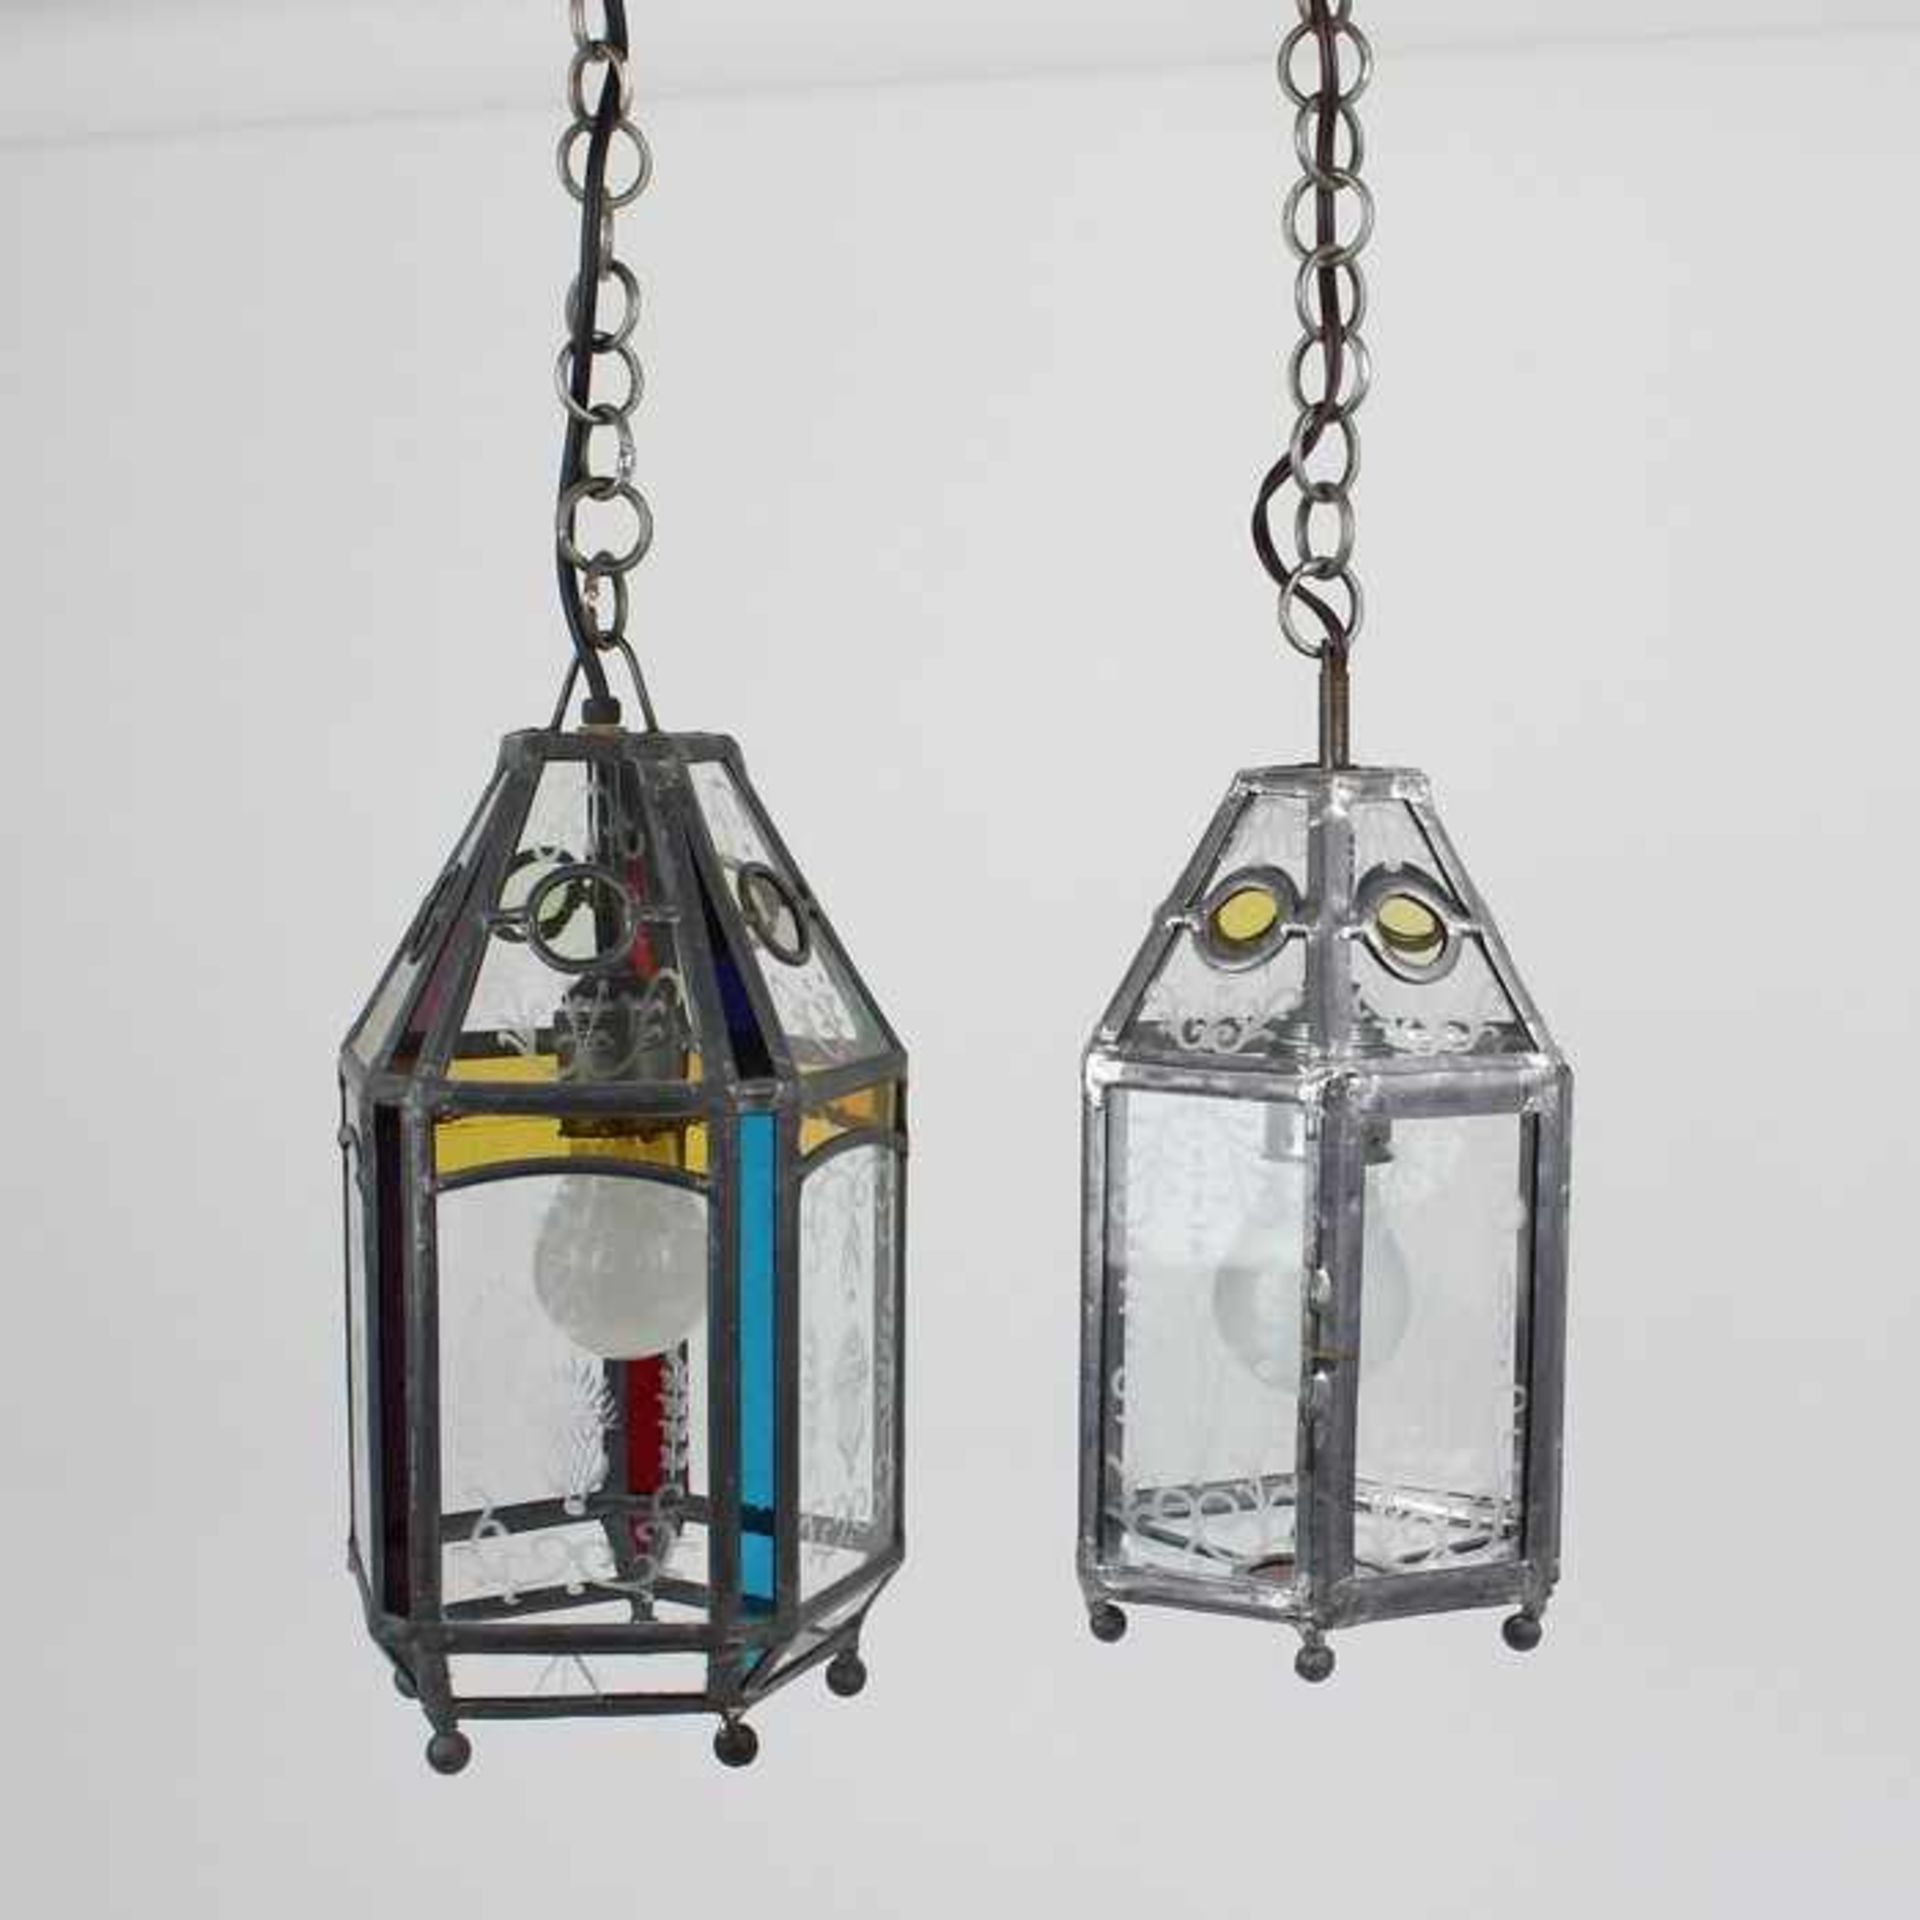 Deckenlampen - PaarZinn/Glas, 1-flammig, Laternenform, 1x 5eckig m. z.T. bunten Glassegmenten, 1x